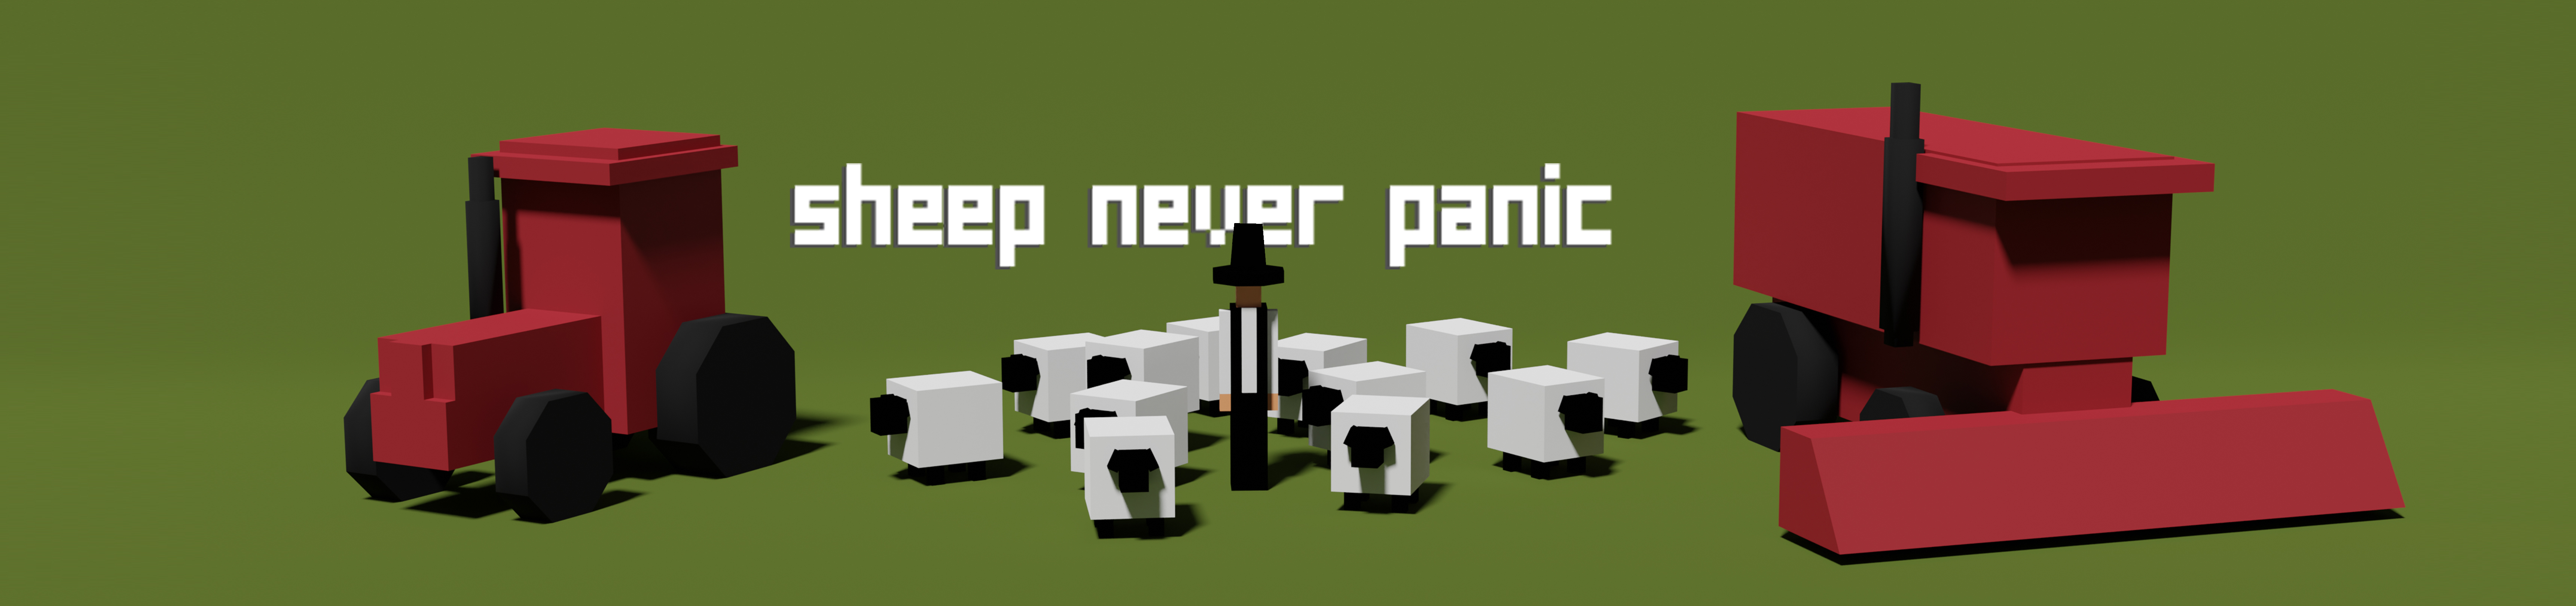 Sheep Never Panic